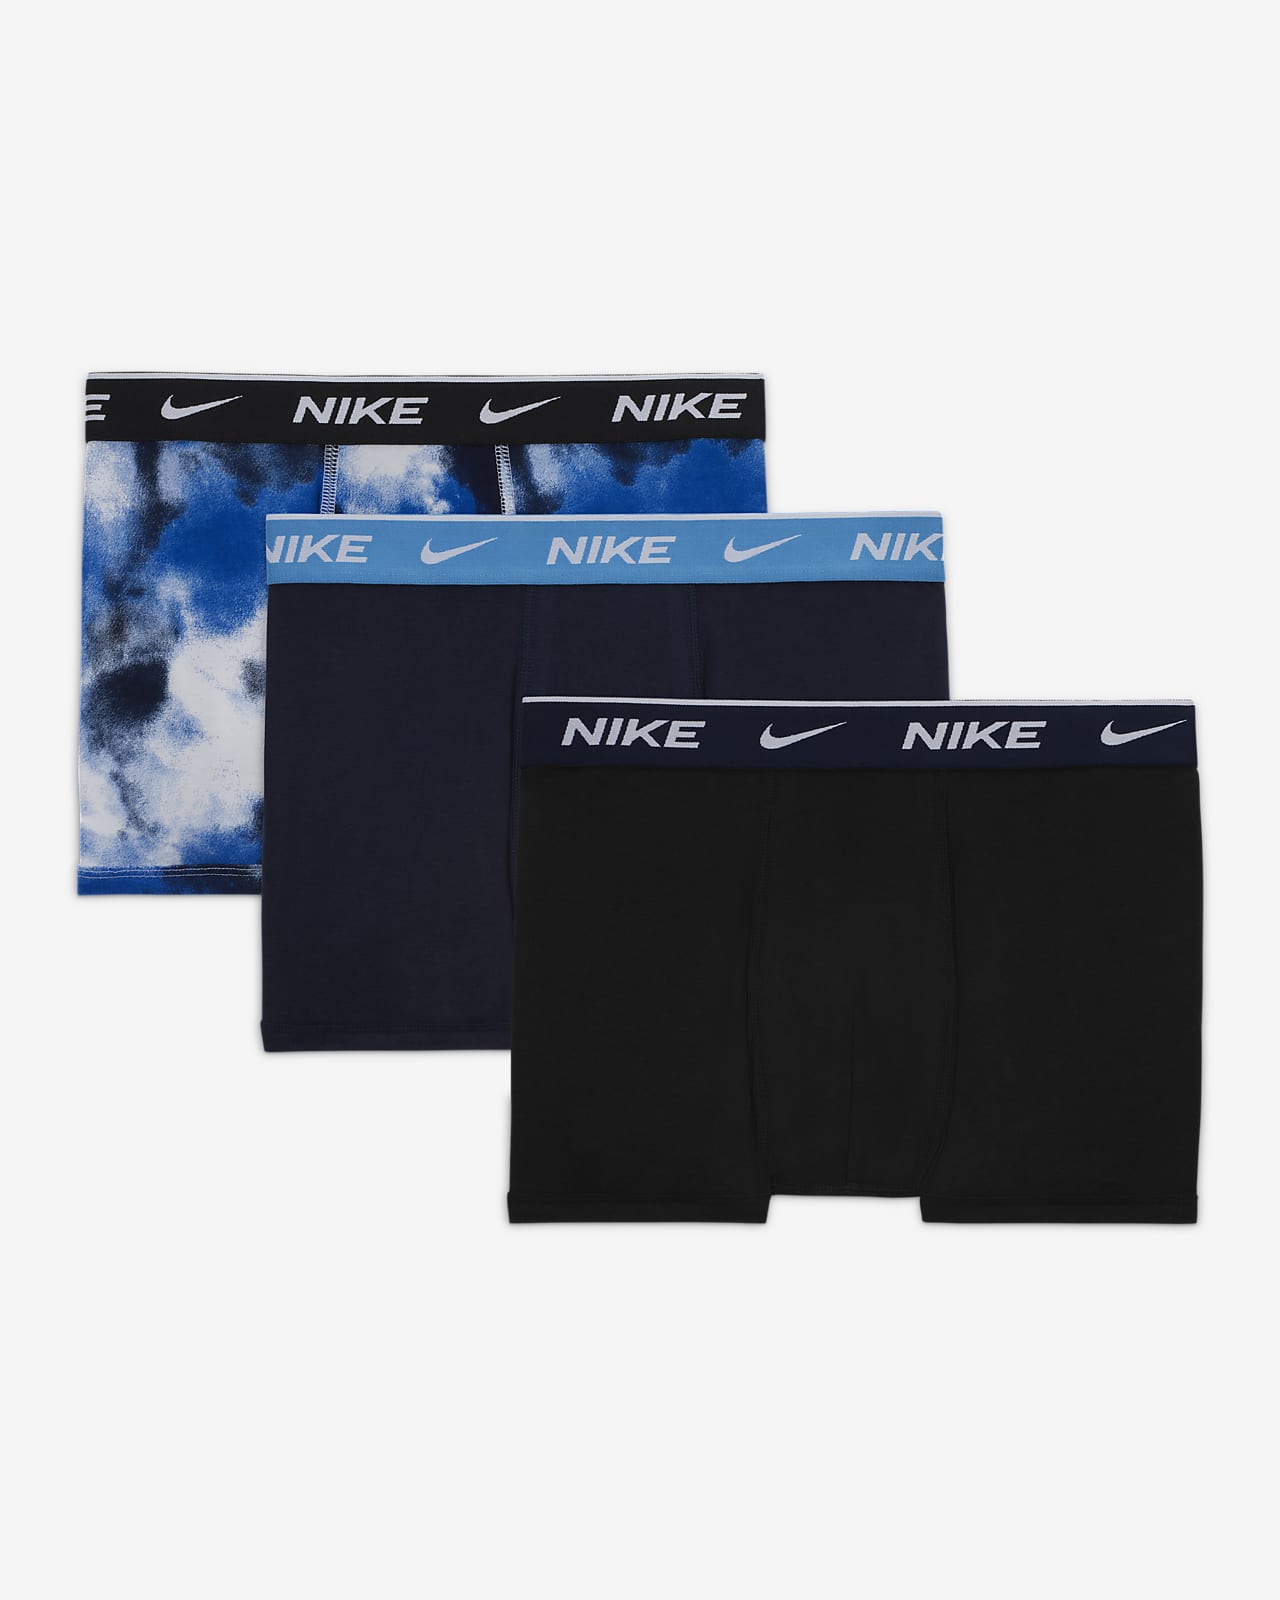 Nike 3 Pack Dri-FIT Boxer Shorts Mens